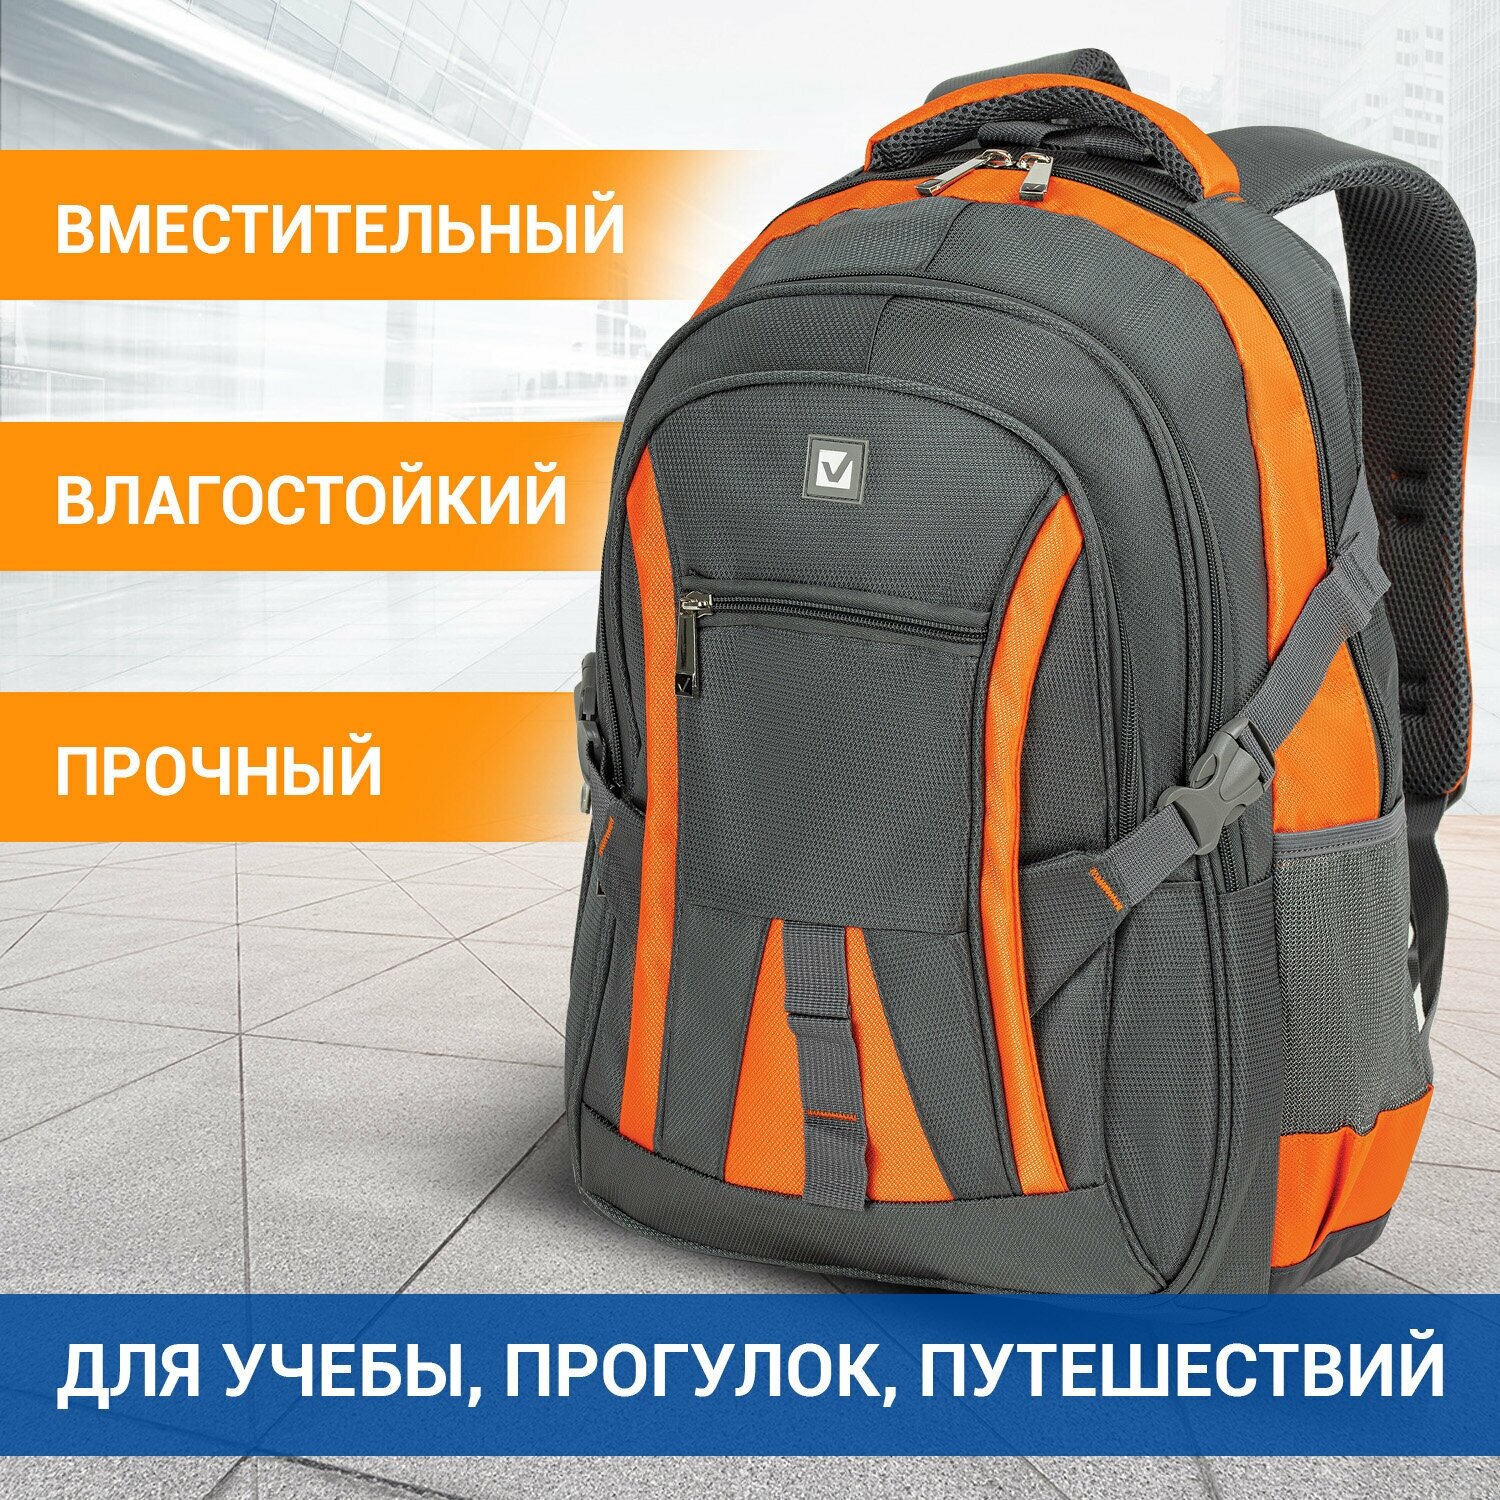 Рюкзак для школы и офиса BRAUBERG(брауберг) "SpeedWay 2", разм. 46*32*19см, 25 л, ткань, серо-оранжевый,224448